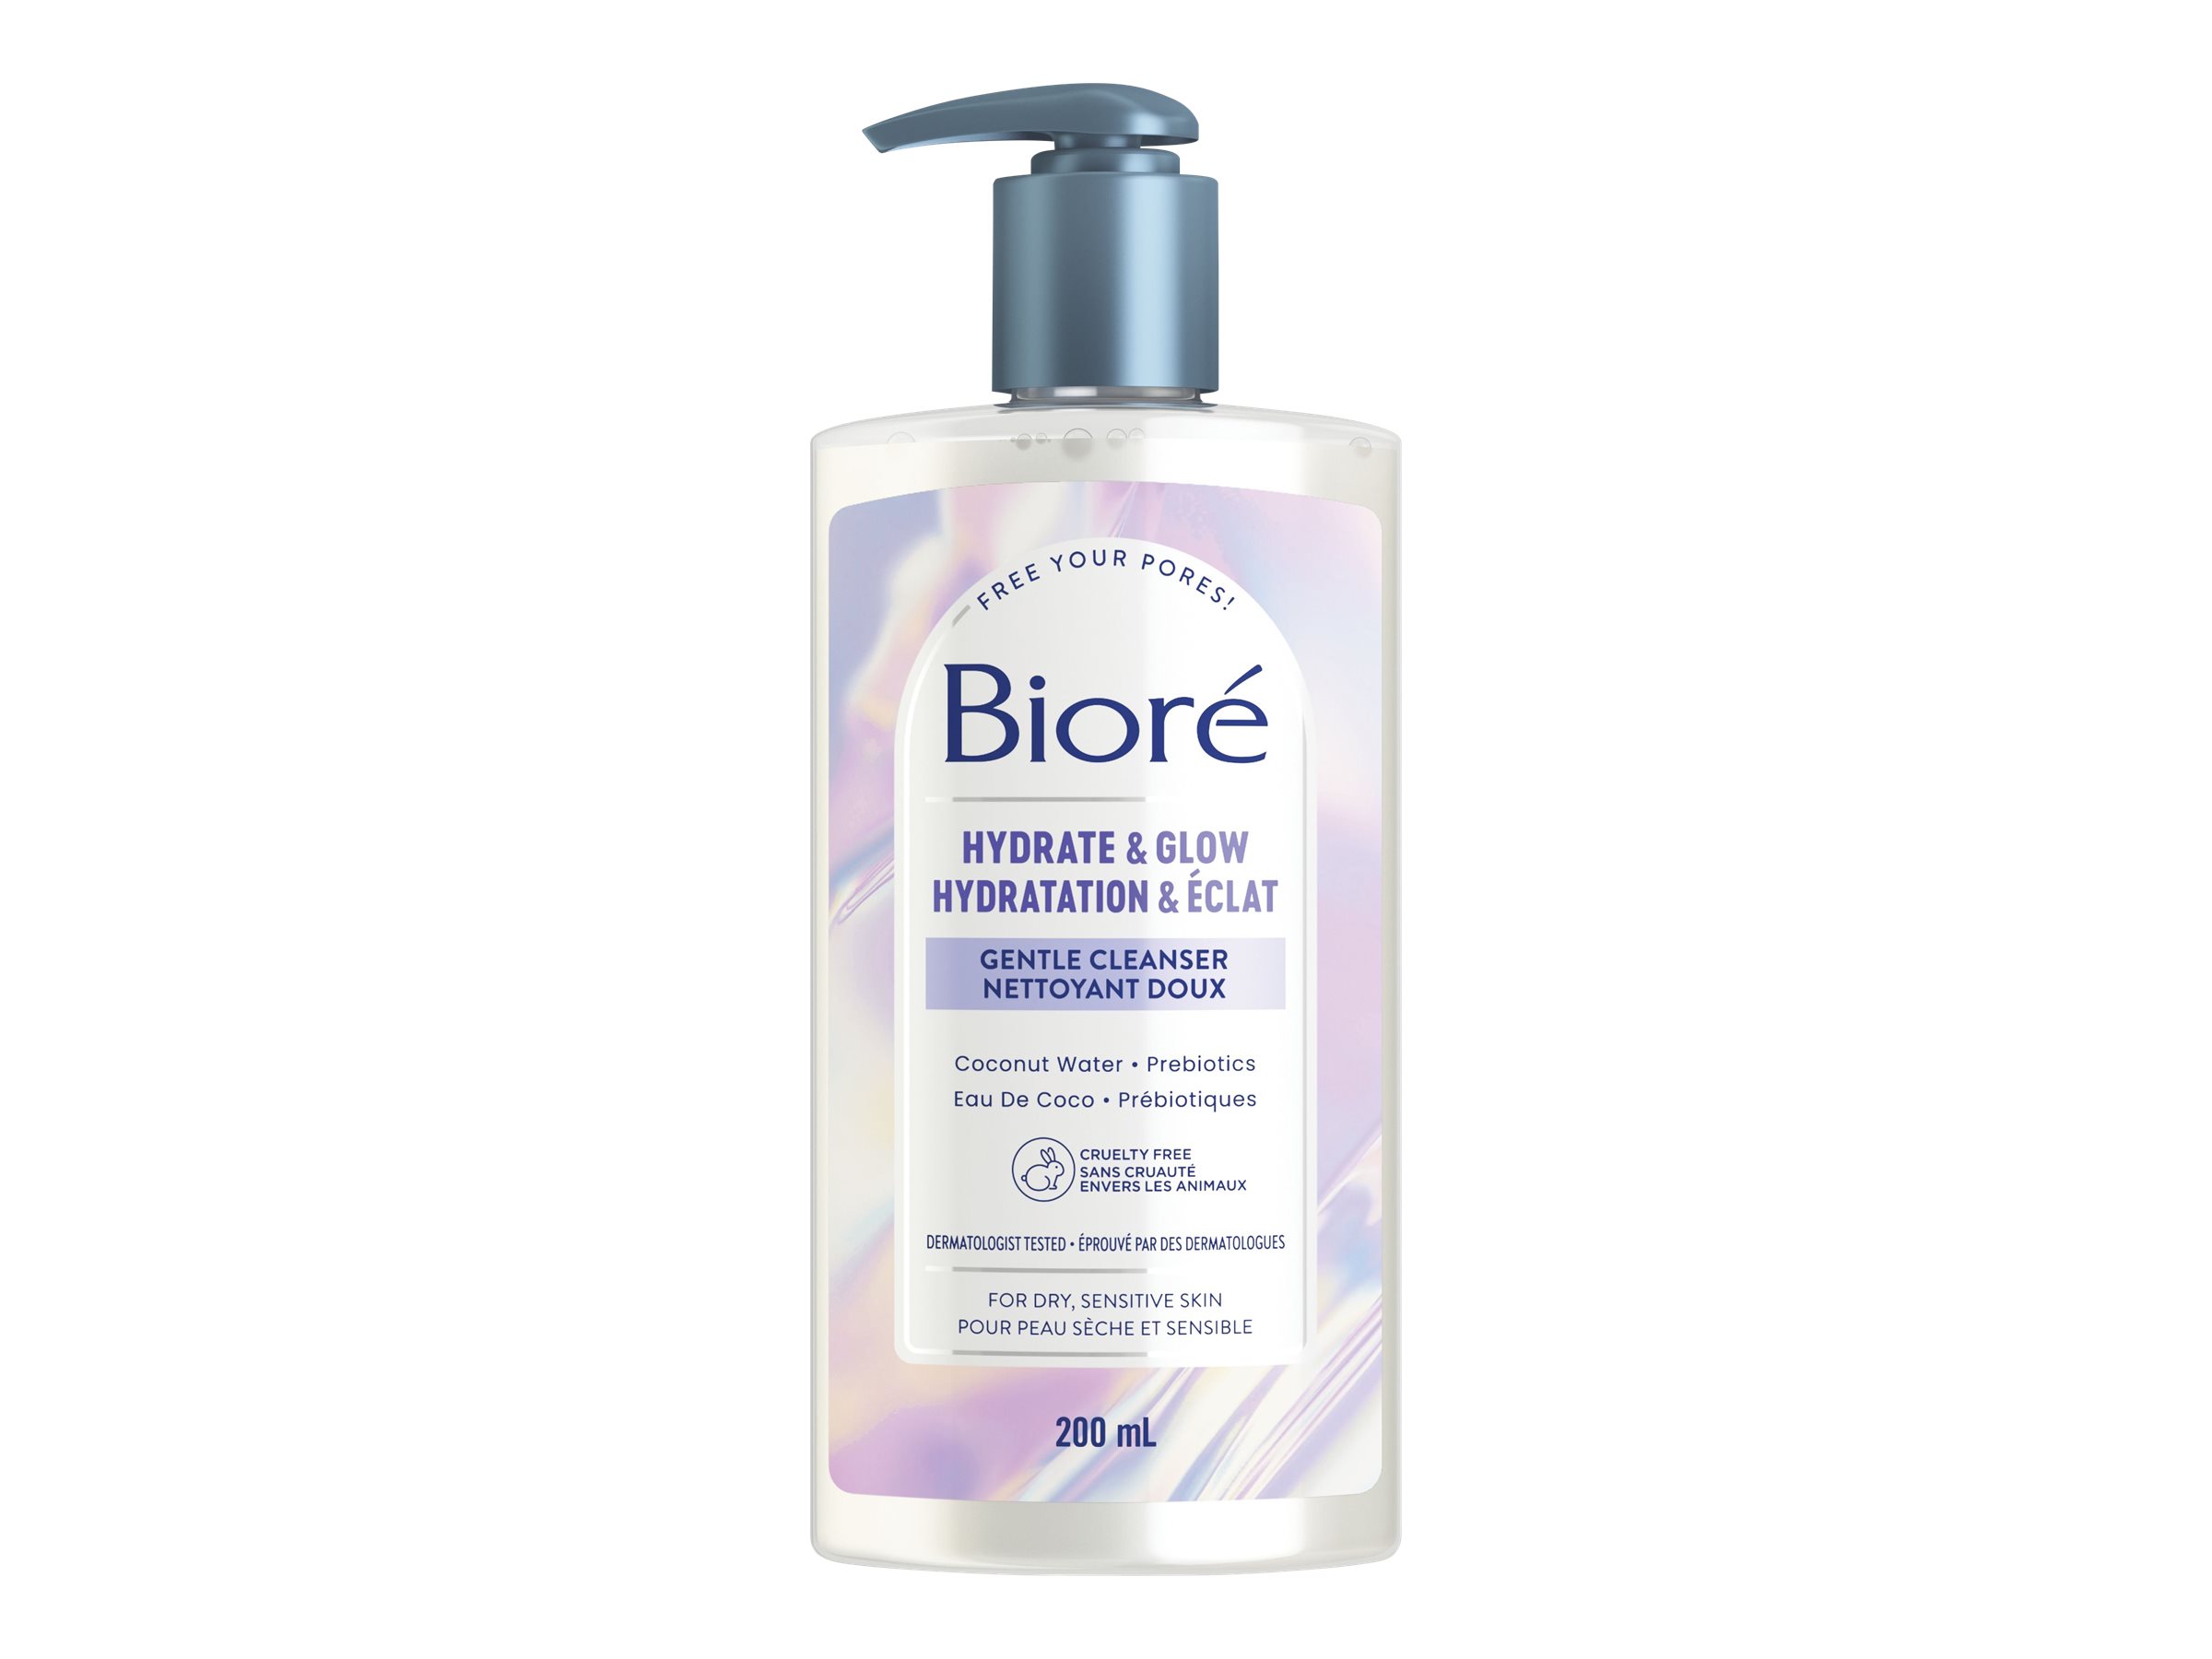 Bioré Hydrate & Glow Gentle Cleanser - 200ml